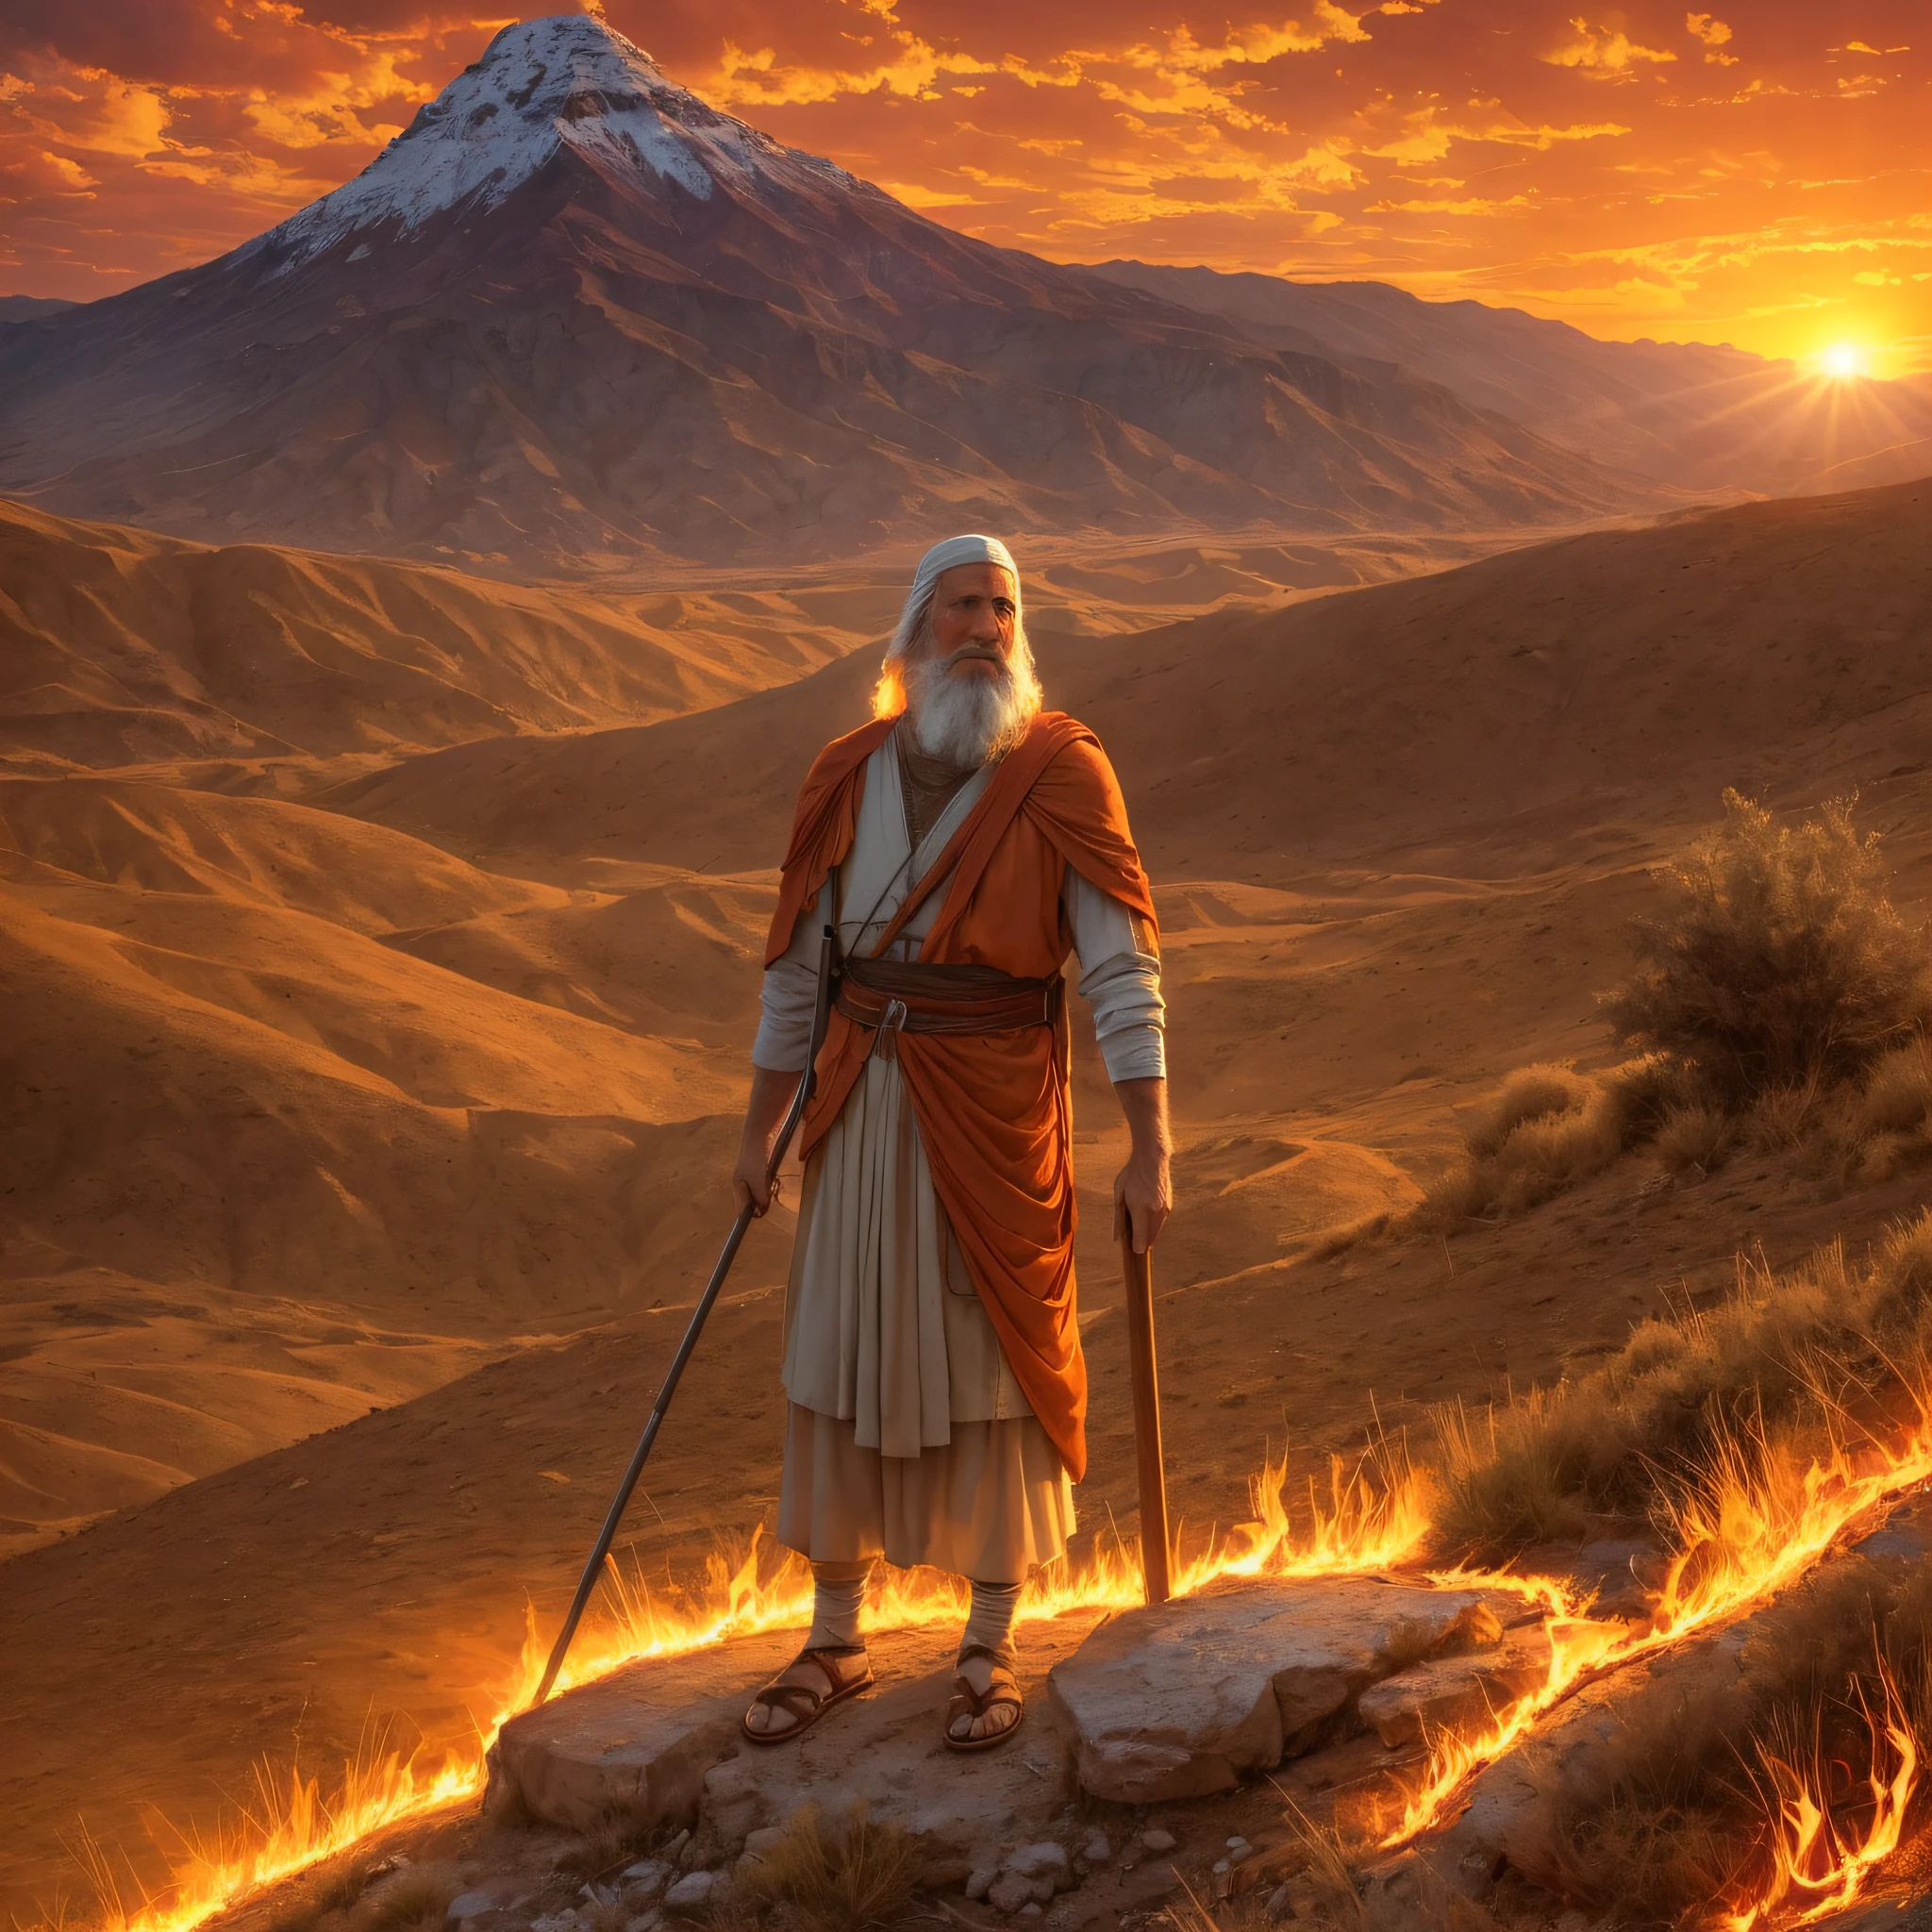 Моисей перед горящим кустом на горе Хорив. Моисей — старик, одетый как пастух.. Куст светлый, яркое пламя, но он не сгорает в огне. Моисей с изумлением и восхищением смотрит на куст. Окружающая среда гористая и пустынная., с заходом солнца и освещением сцены оранжевым светом. На этом изображении изображен момент, когда Бог призывает Моисея спасти народ Израиля.. --auto --s2